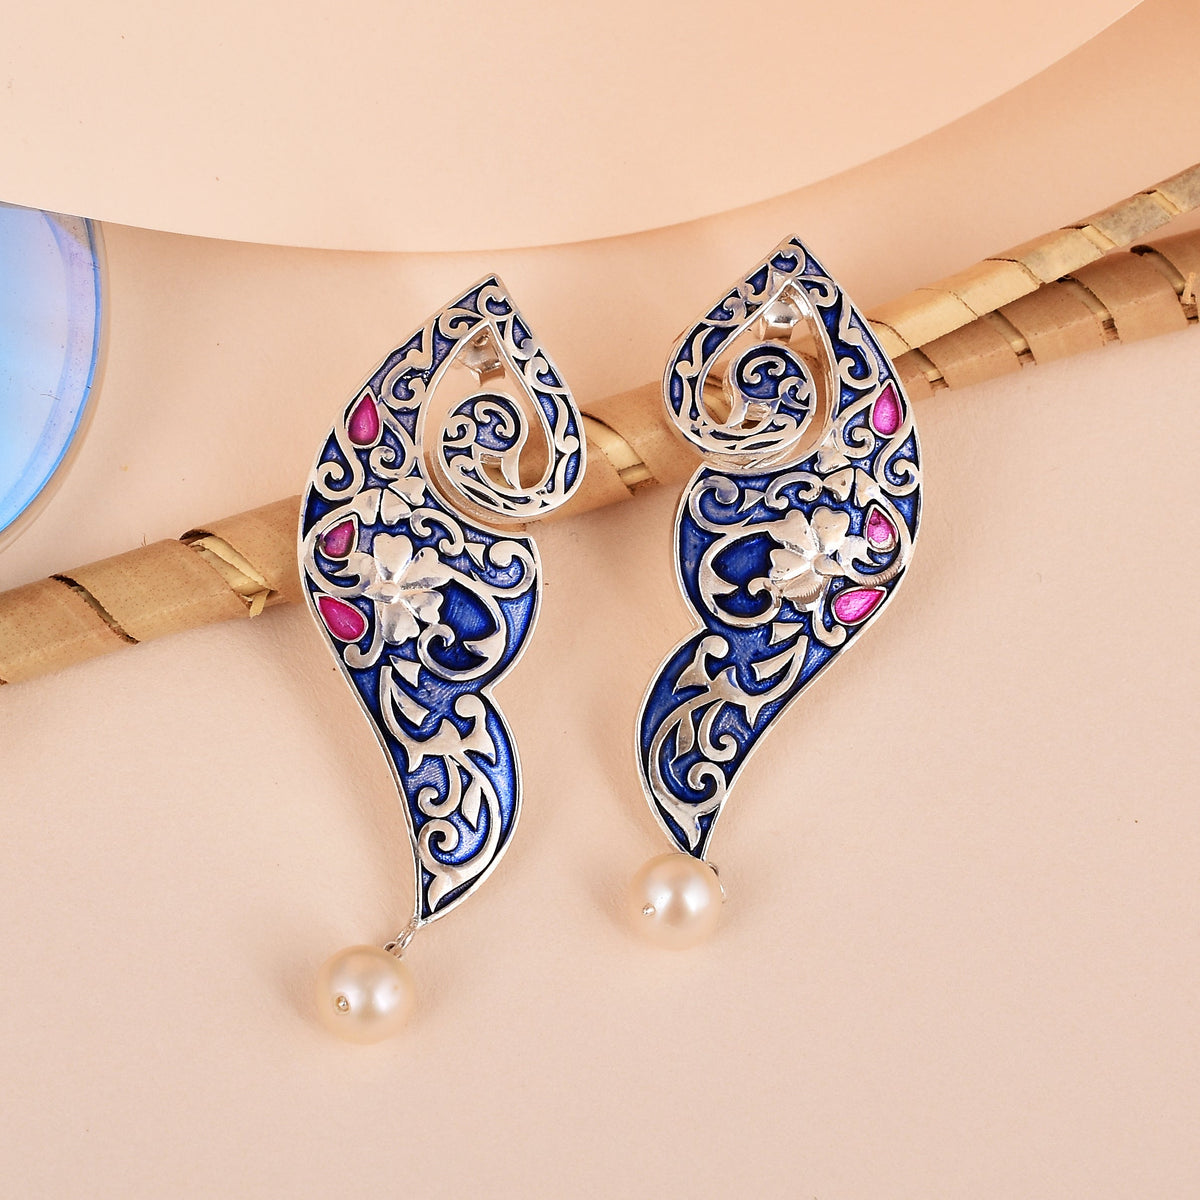 White Designer Earrings- Statement Earrings for Women - Ursula Enamel  Statement Danglers Earrings by Blingvine